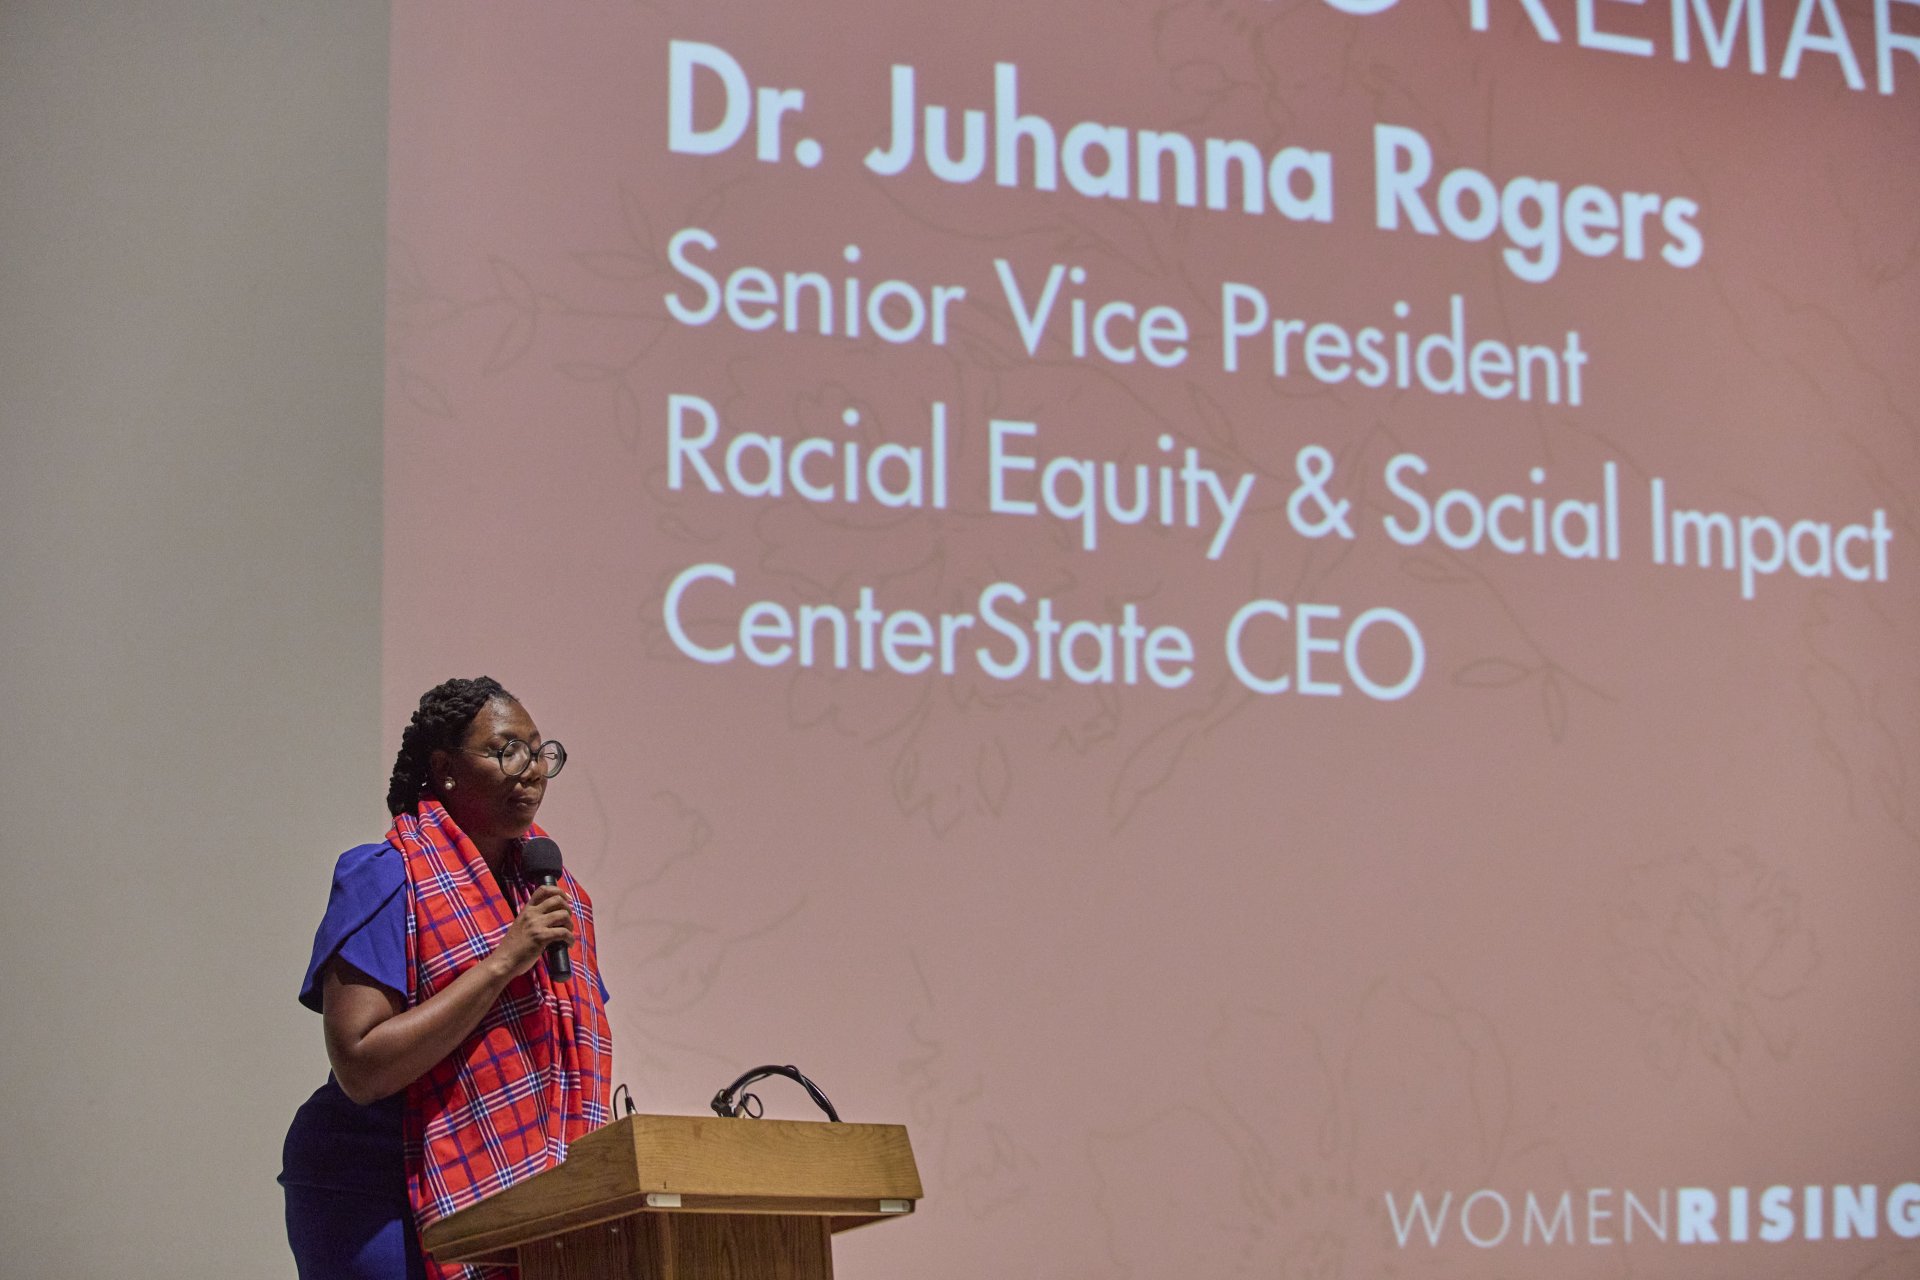 Dr. J speaking at Women's Rising